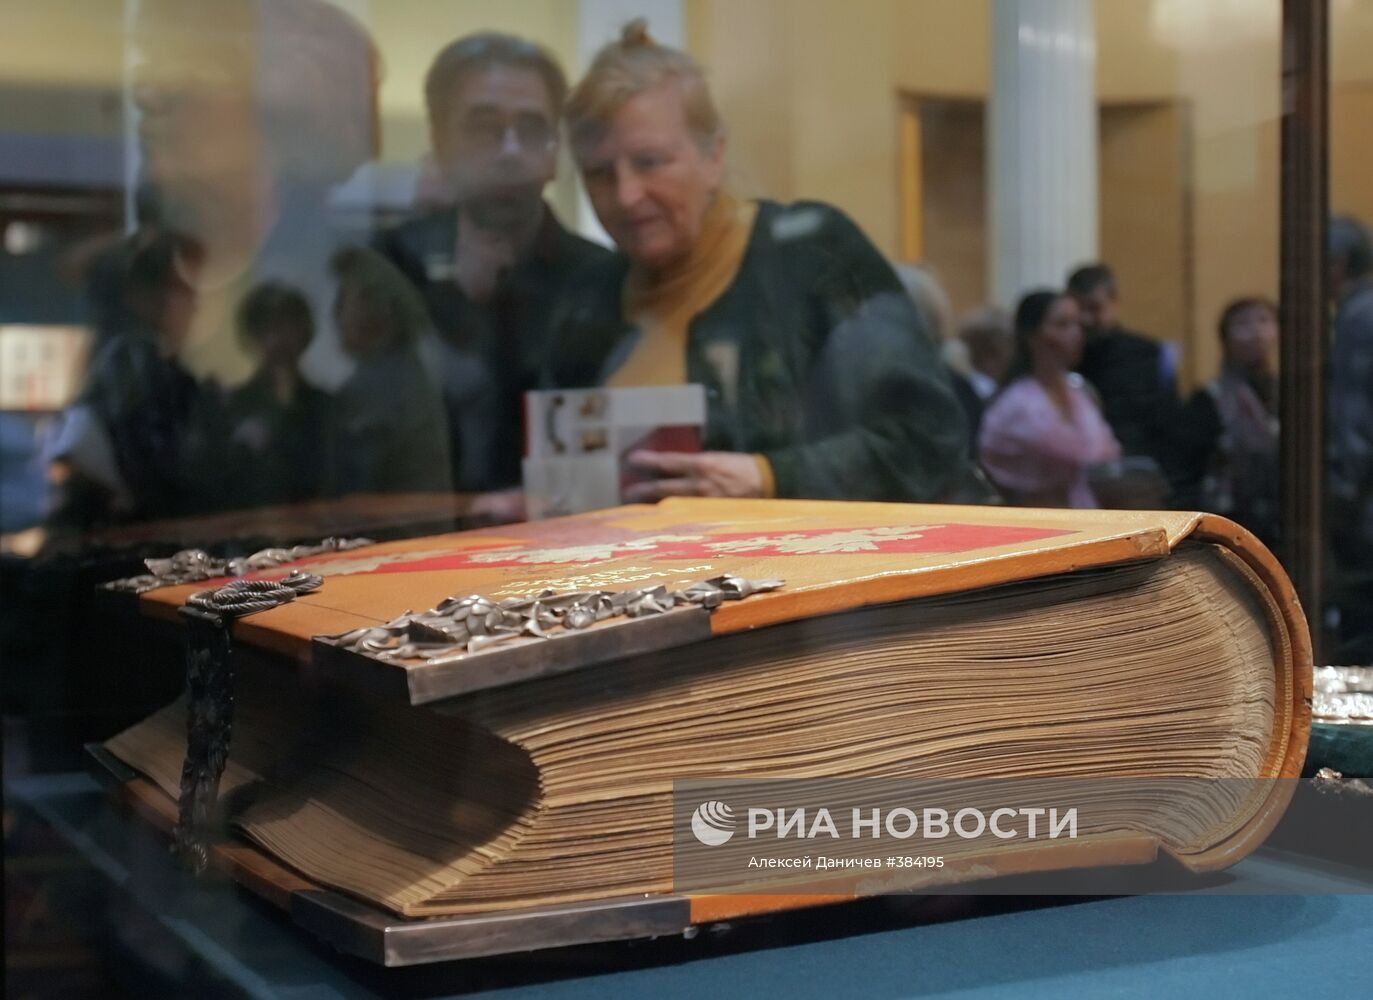 Открытие выставки "Книжная Кунсткамера" в Санкт-Петербурге